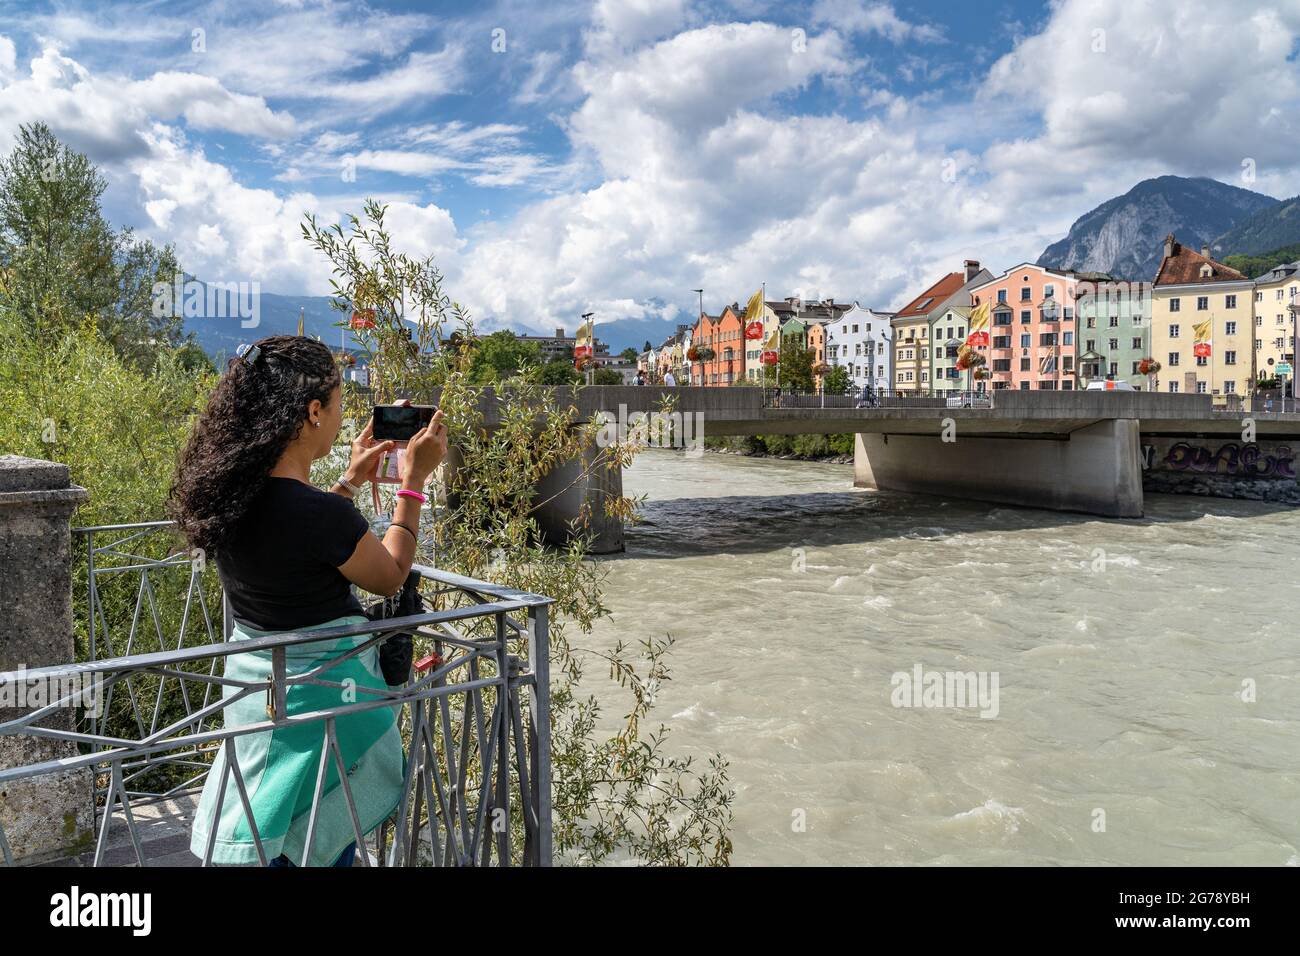 Europe, Autriche, Tyrol, Innsbruck, touriste a photographié avec son smartphone les façades colorées de la maison sur les rives de l'auberge Banque D'Images